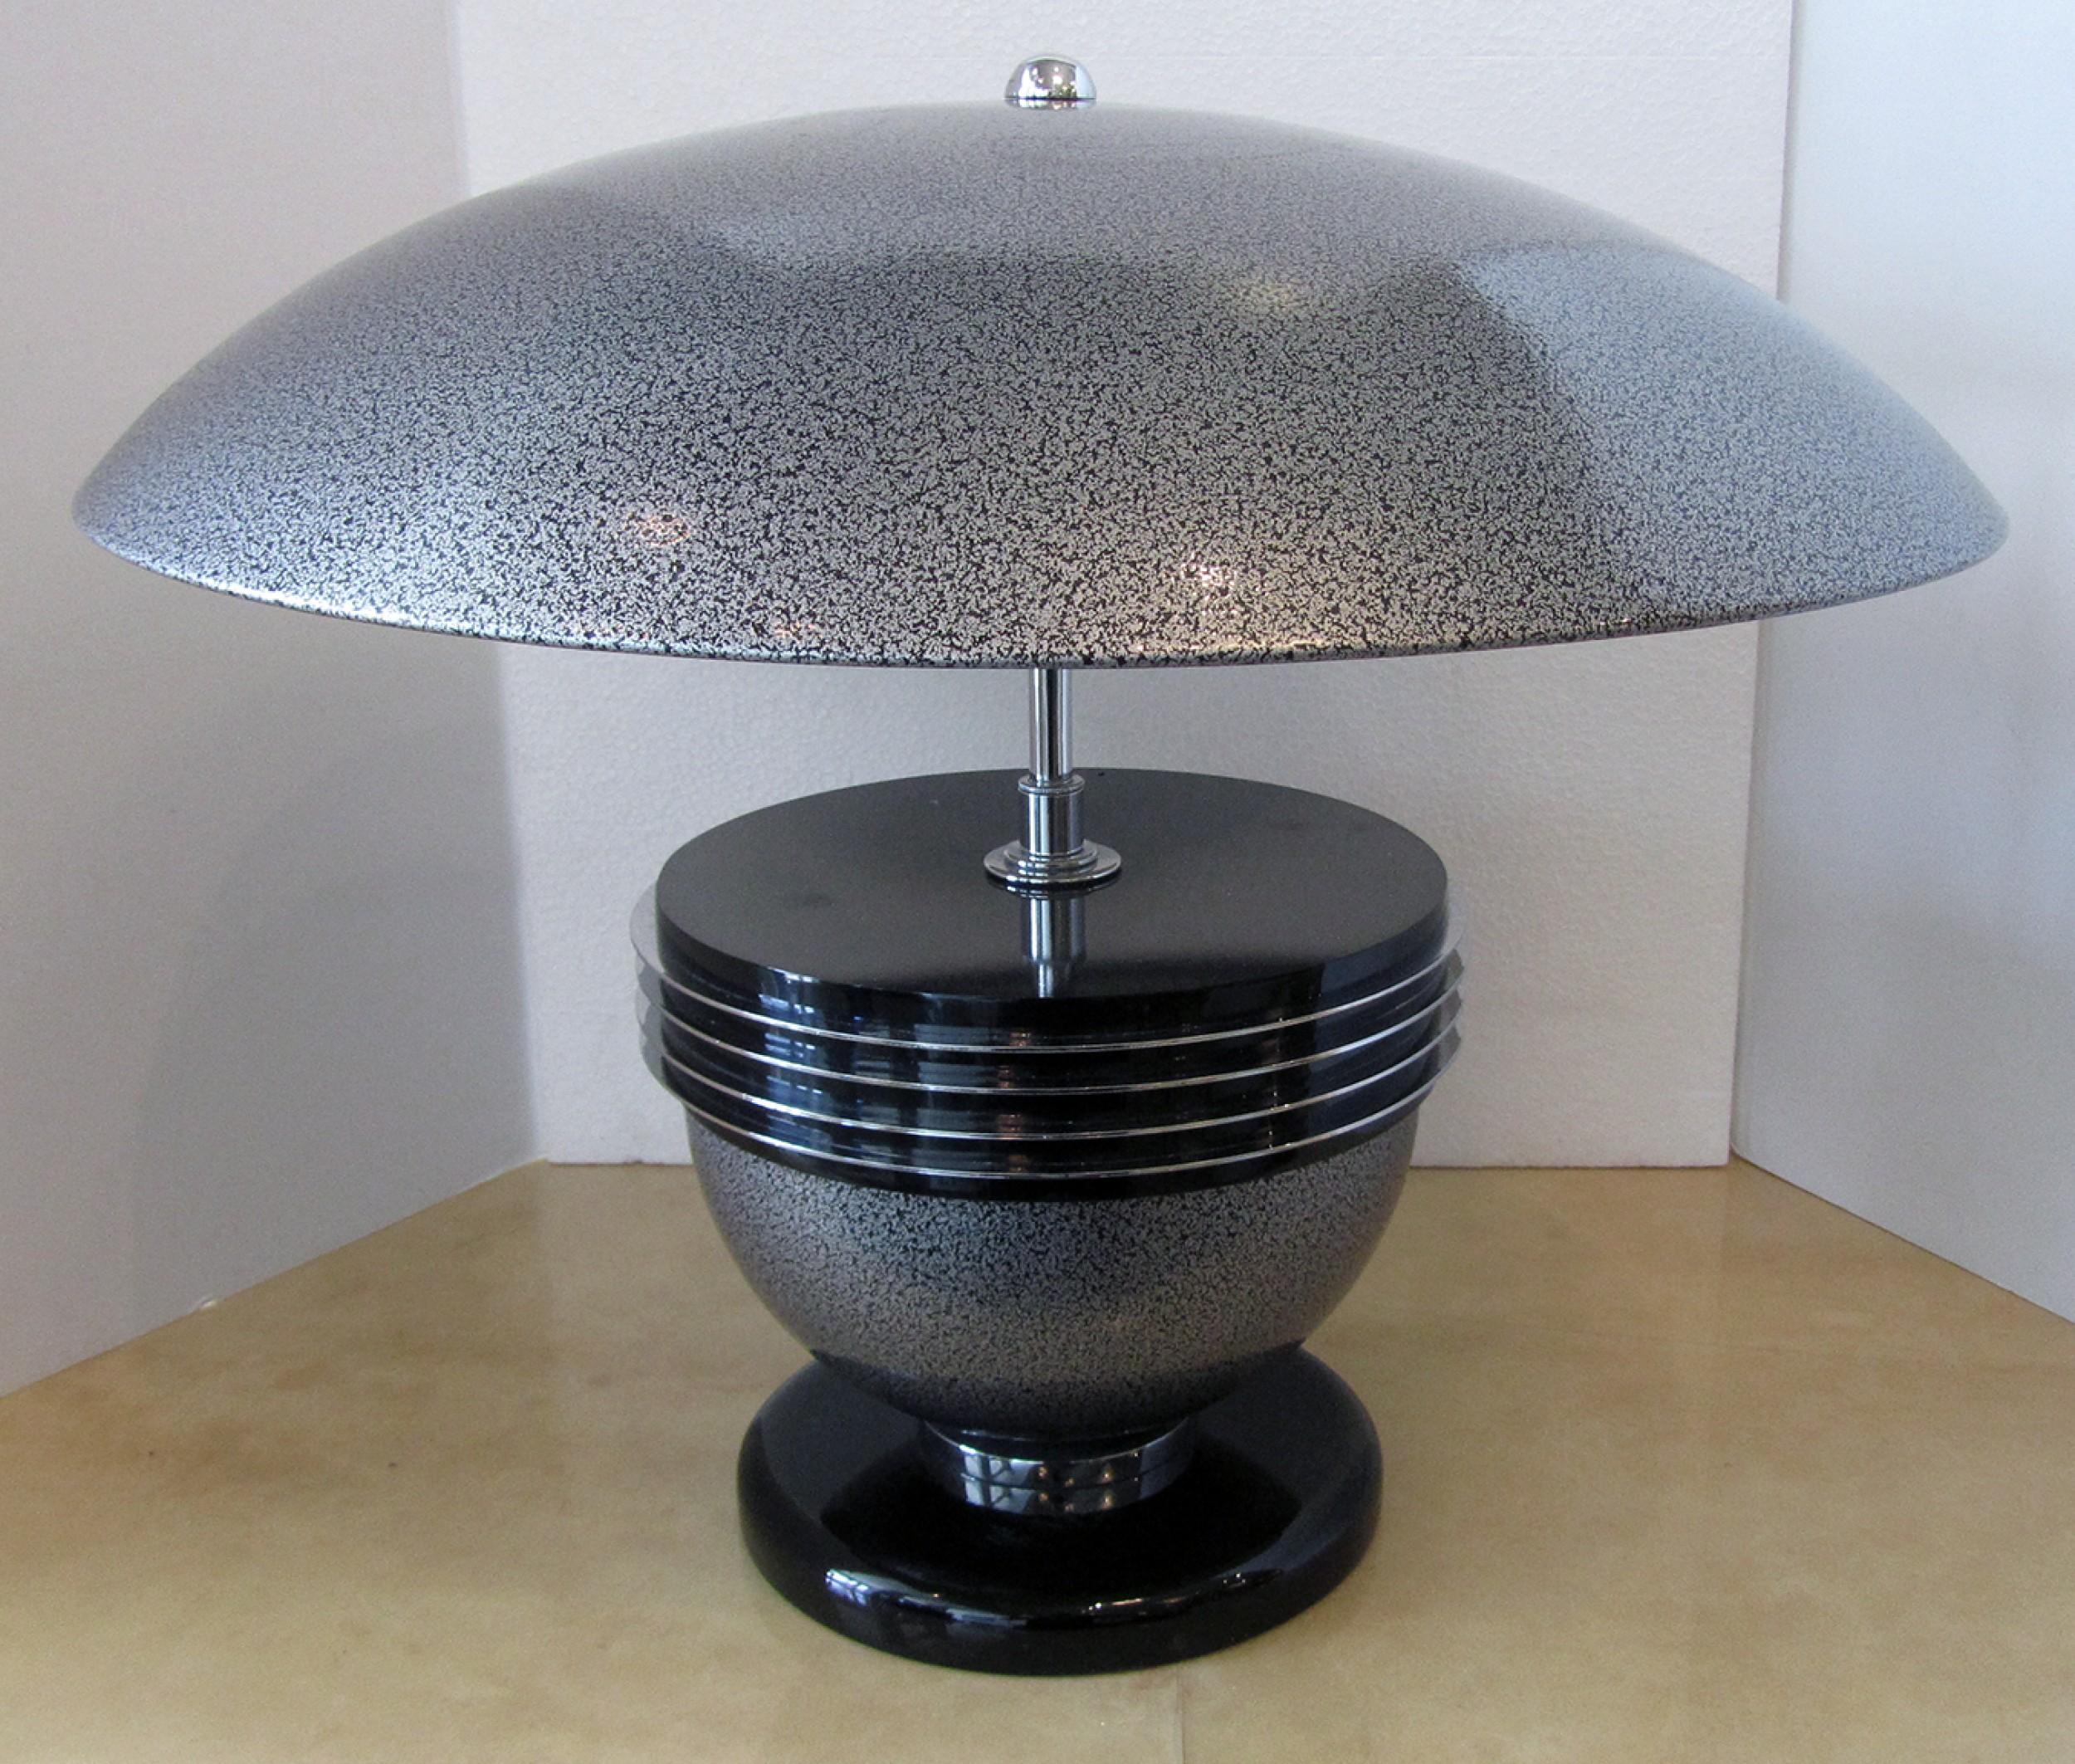 Lampe de table moderne américaine du milieu du siècle, avec une finition métallique noire et argentée et un abat-jour bombé assorti. (WALTER PROSPER)
